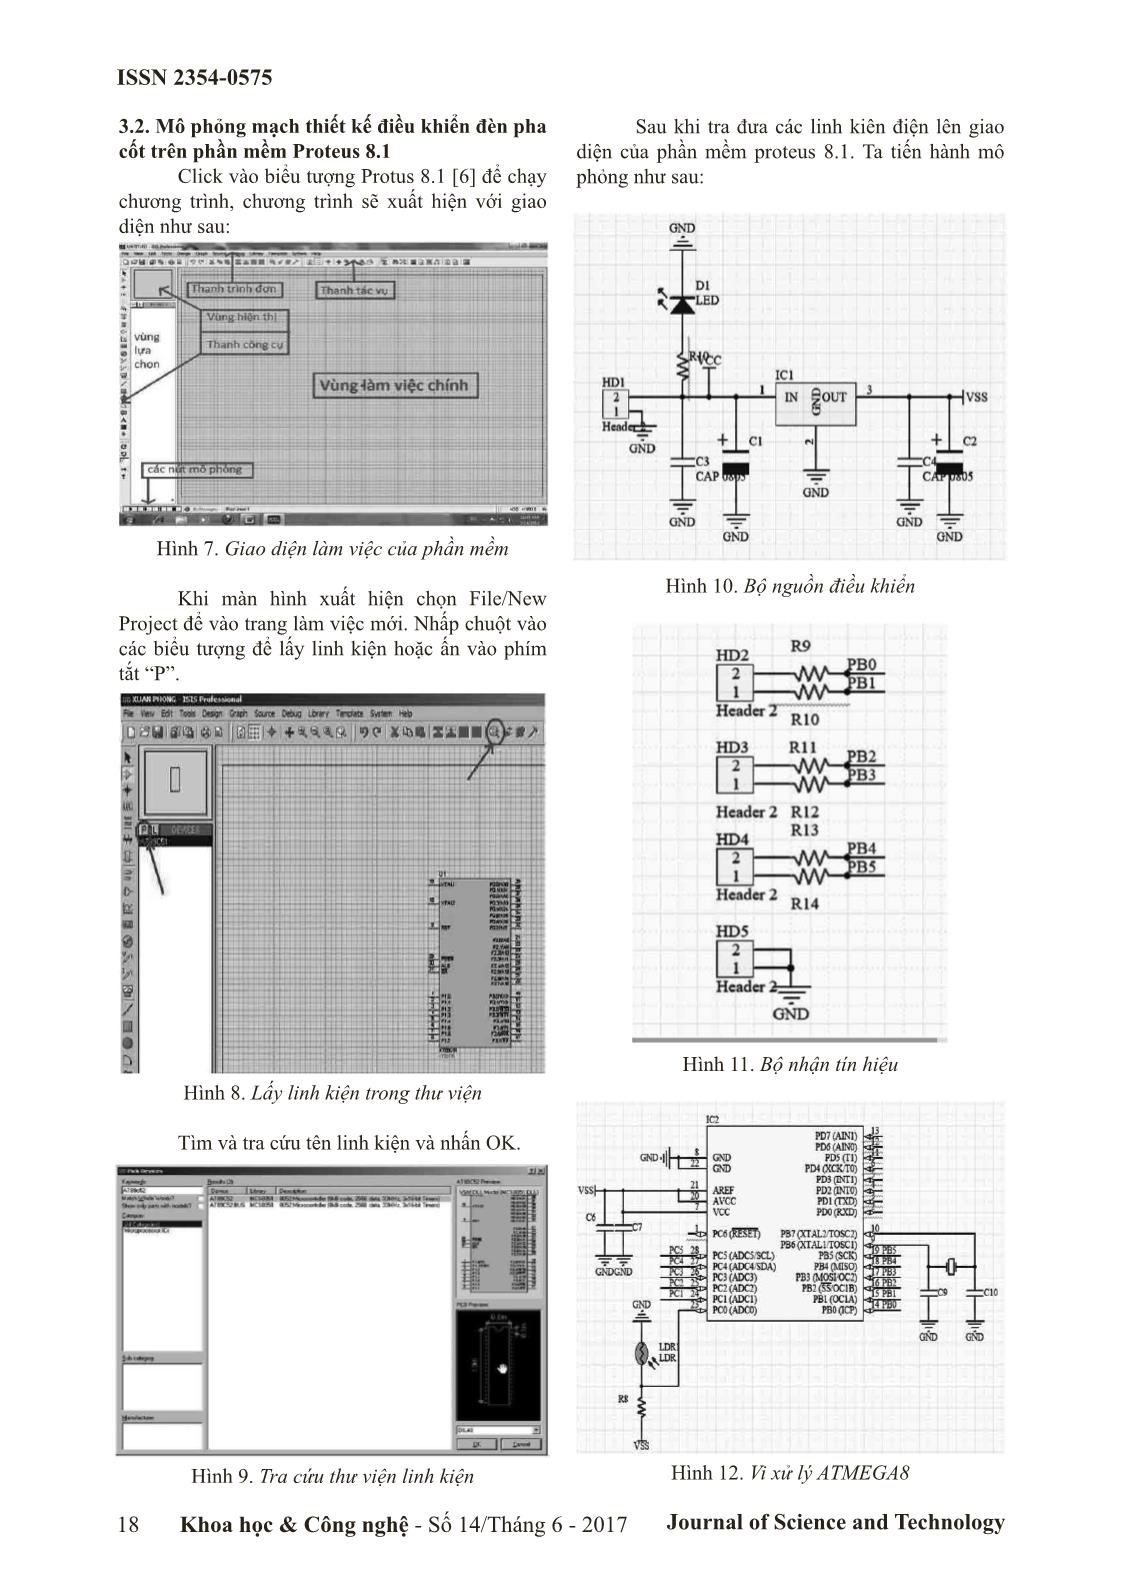 Nghiên cứu mô phỏng mạch thiết kế điều khiển đèn pha ô tô bằng mạng can sử dụng phần mềm proteus 8.1 trang 3